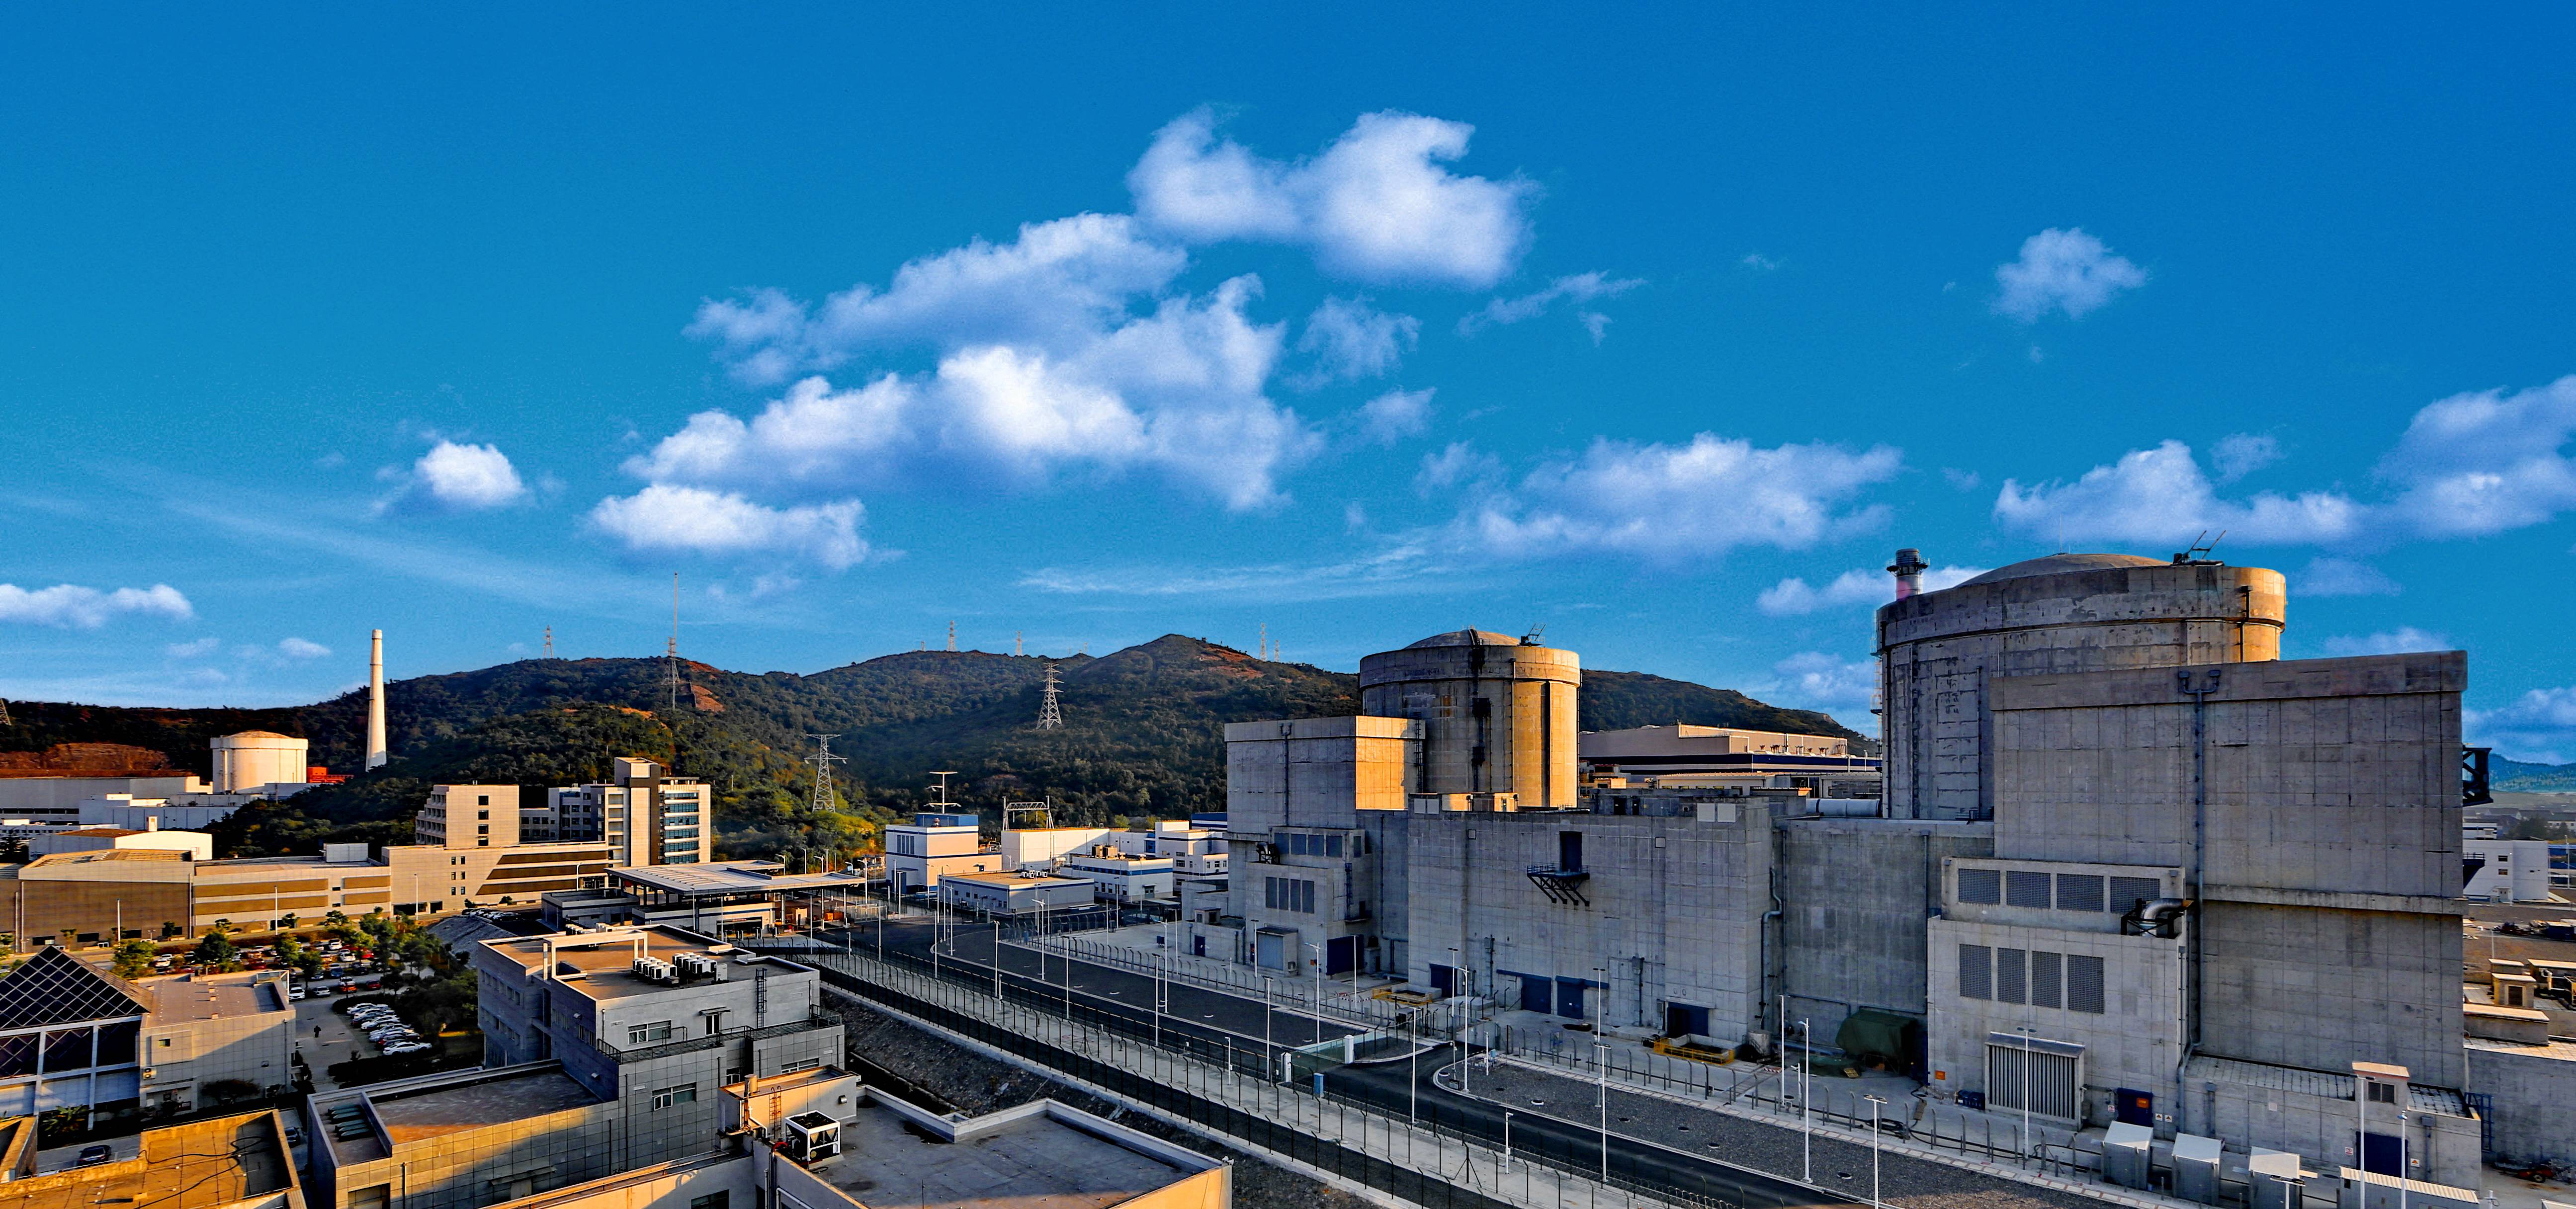 秦山核电是目前我国核电机组数量最多、堆型最丰富、装机容量最大的核电基地